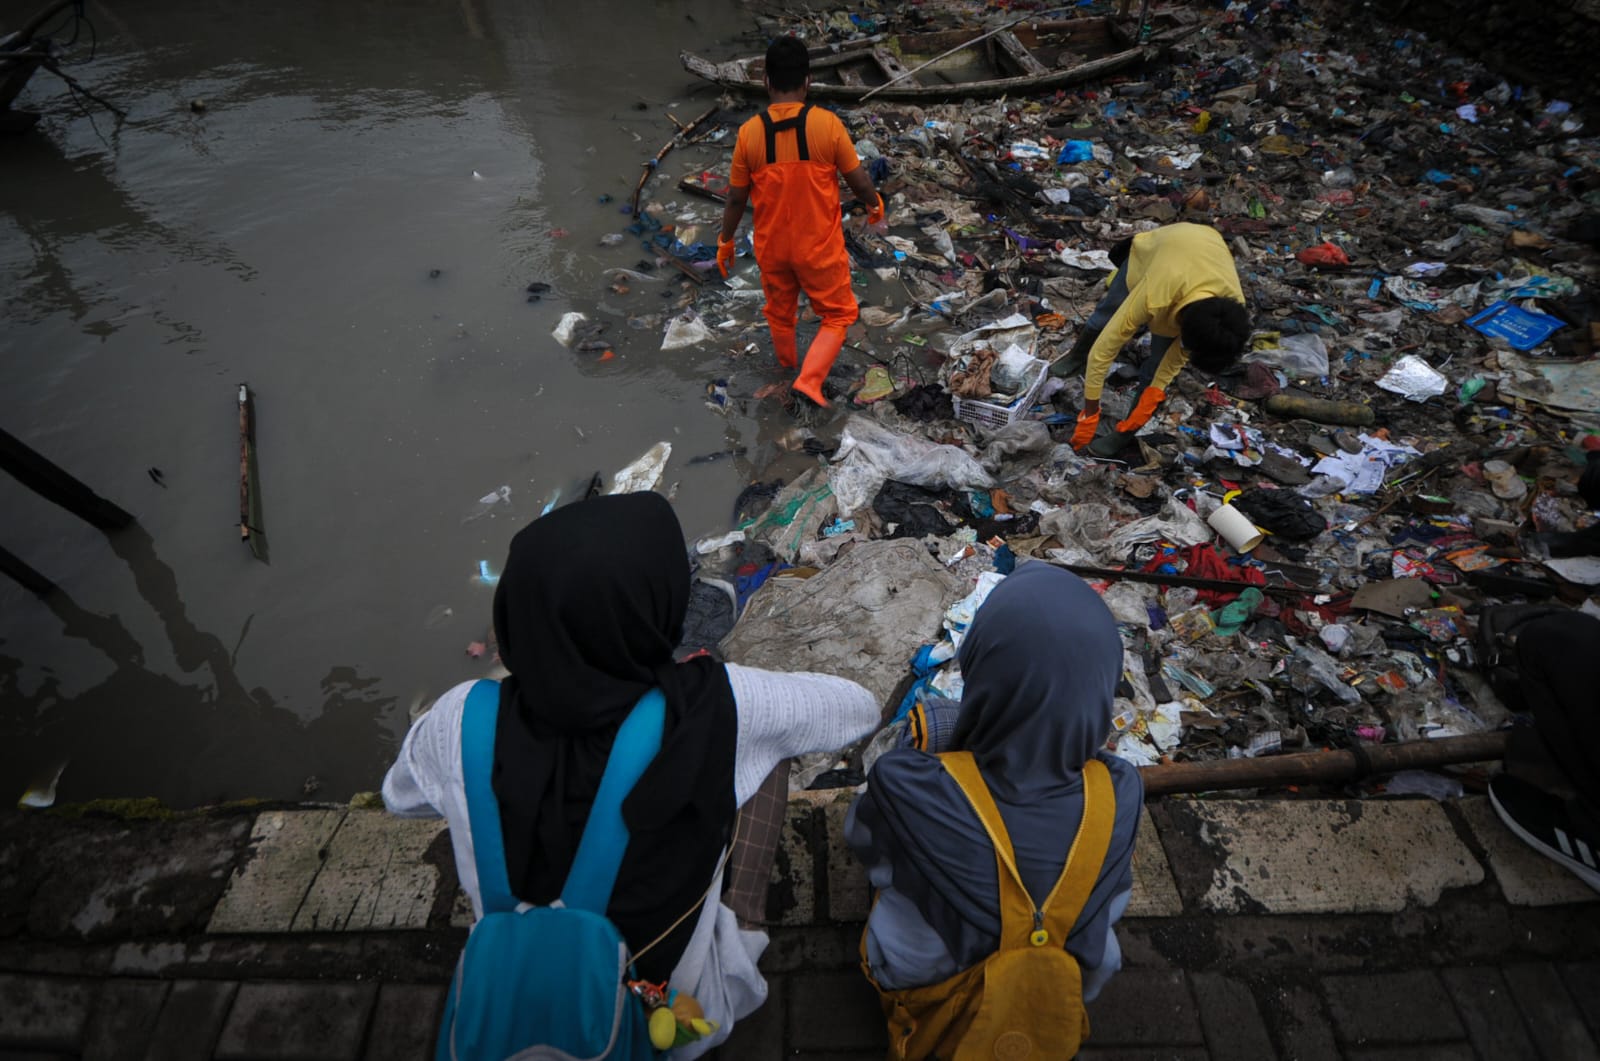 Ratusan Orang Terciduk Buang Sampah Sembarangan di Surabaya , Denda Capai 29 Juta